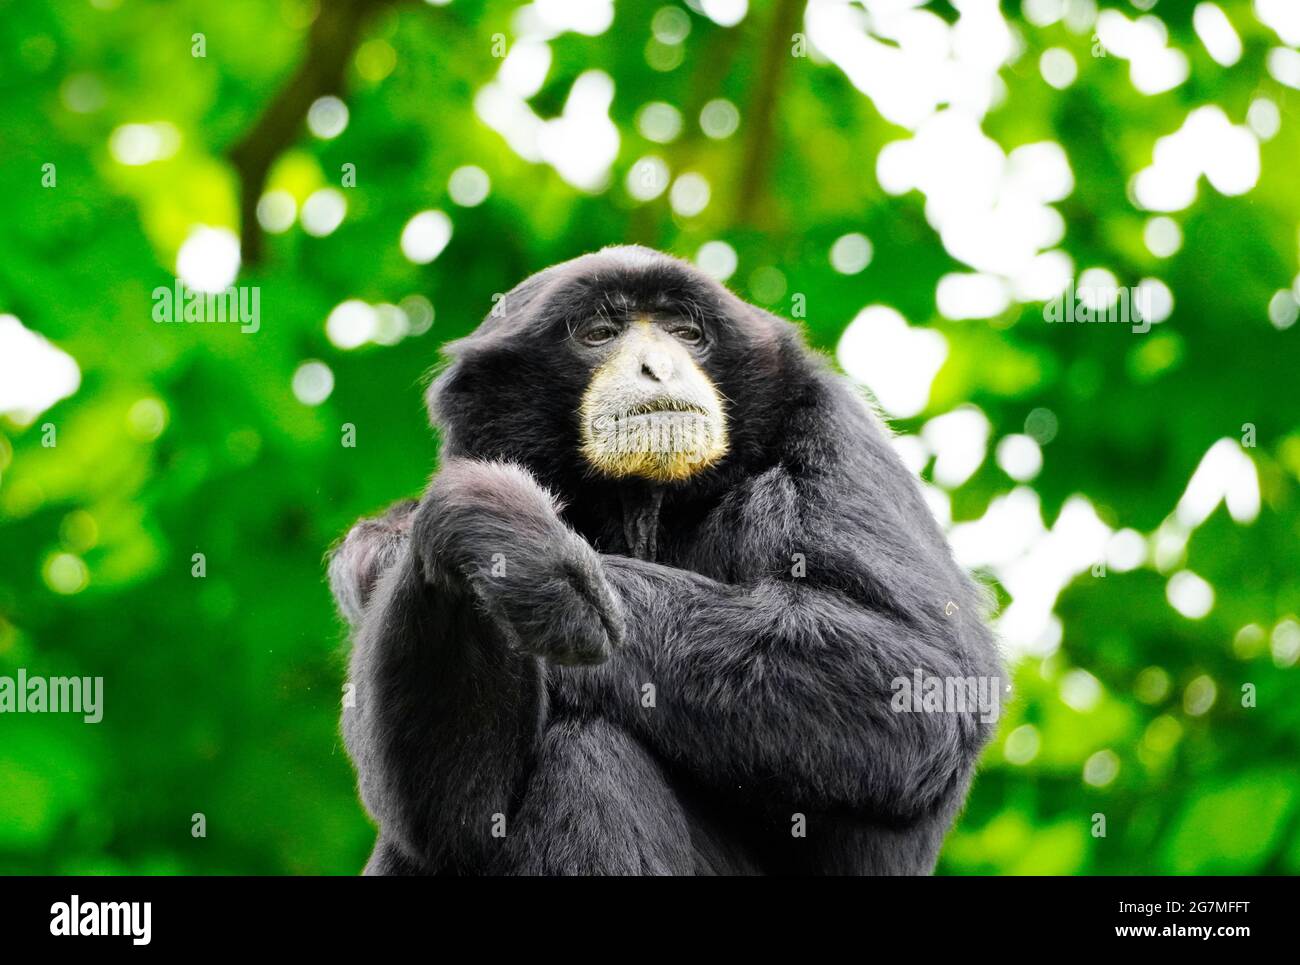 Porträt eines Siamang (Symphonangus syndactylus). Primatenart aus der Gibbon-Familie (Hylobatidae). Affe mit schwarzem Fell. Stockfoto